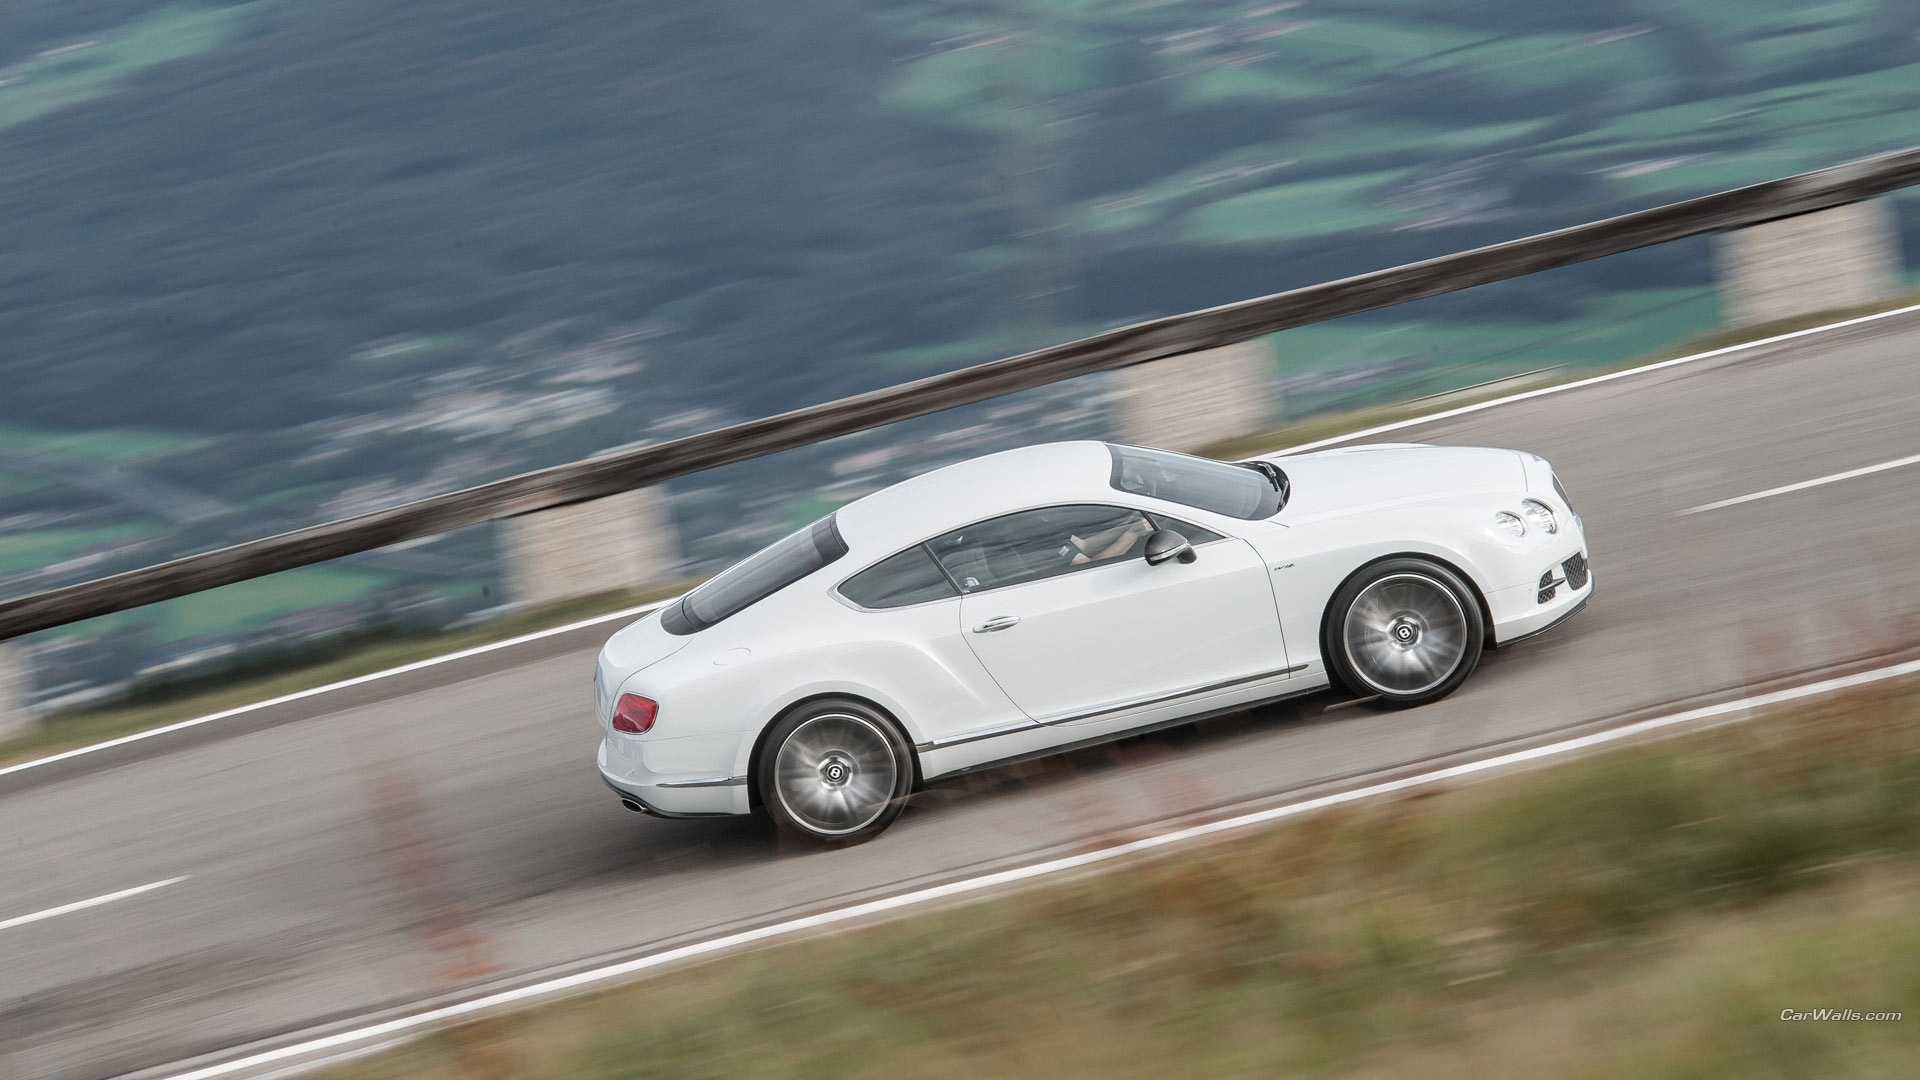 Free download wallpaper Bentley, Vehicles, Bentley Continental Gt Speed on your PC desktop